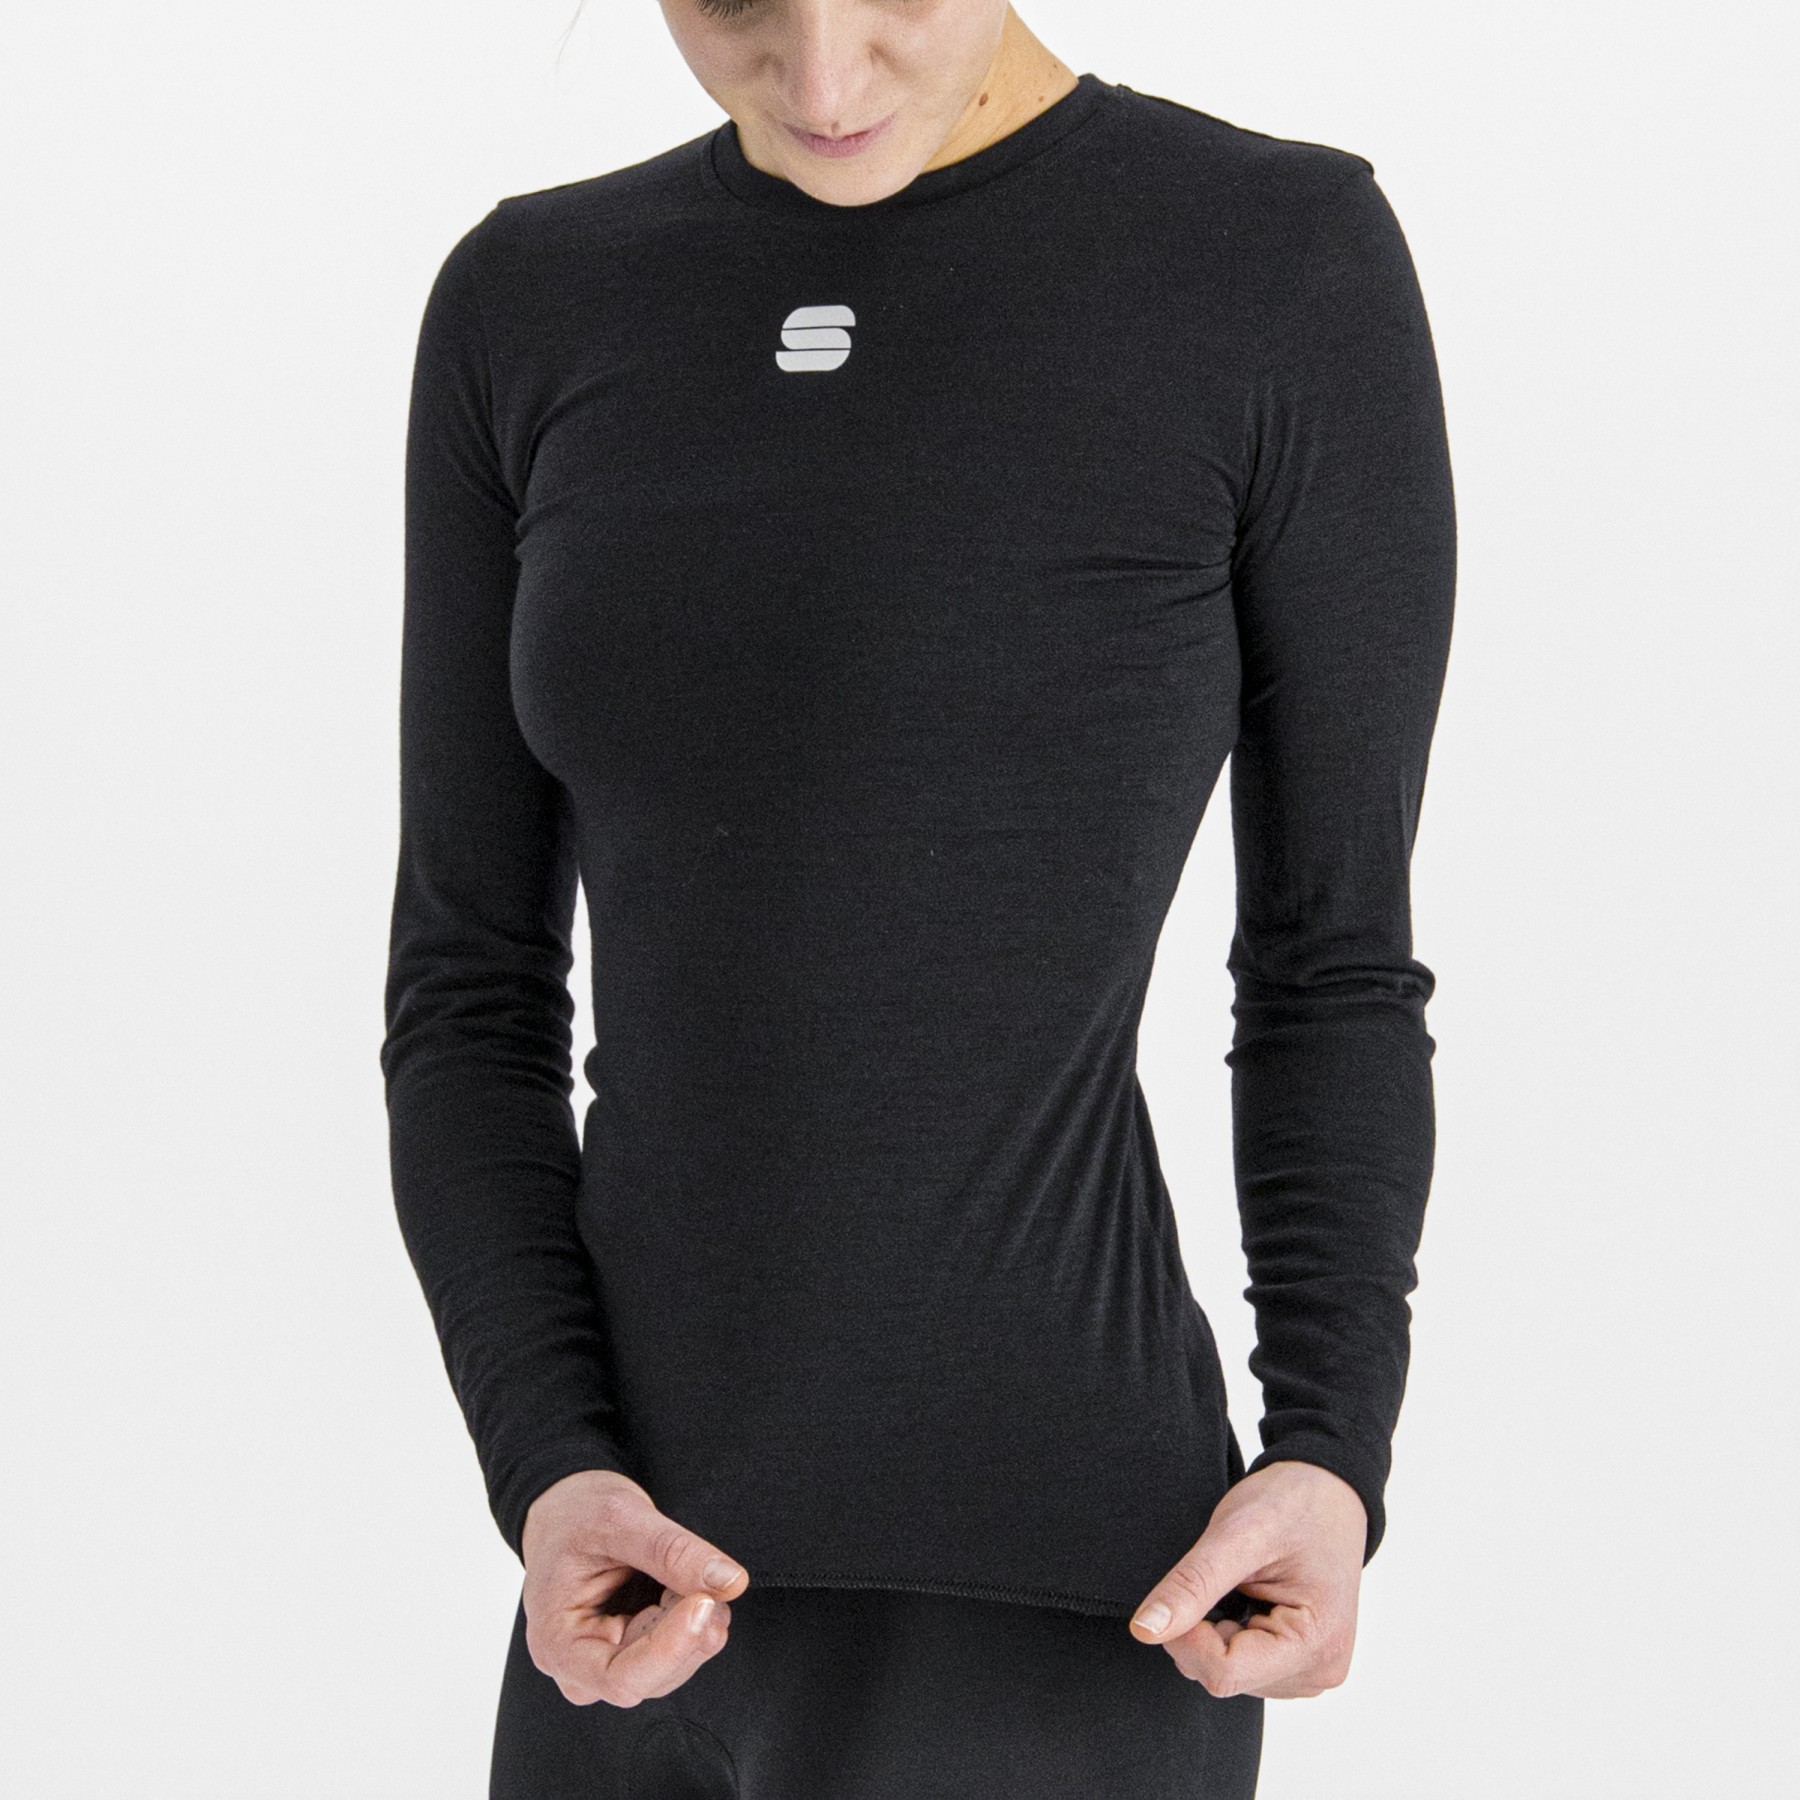 Sportful Women's Merino Tee Long Sleeve - Sous-vêtement thermique femme